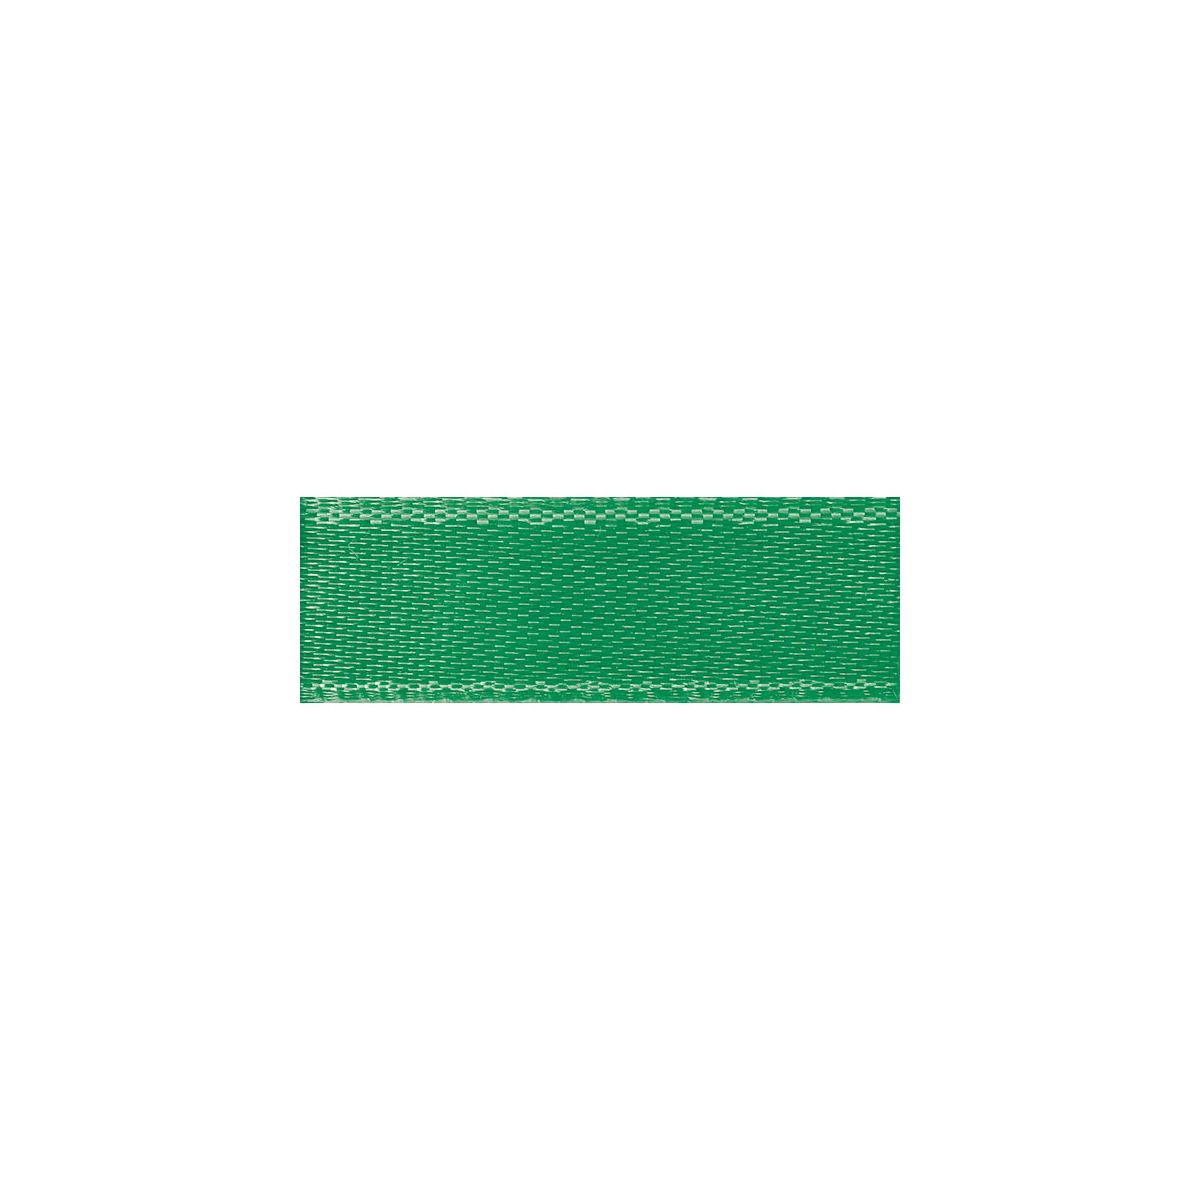 Wstążka Titanum Craft-Fun Series satynowa 12mm zielona 25m (12/25/19)